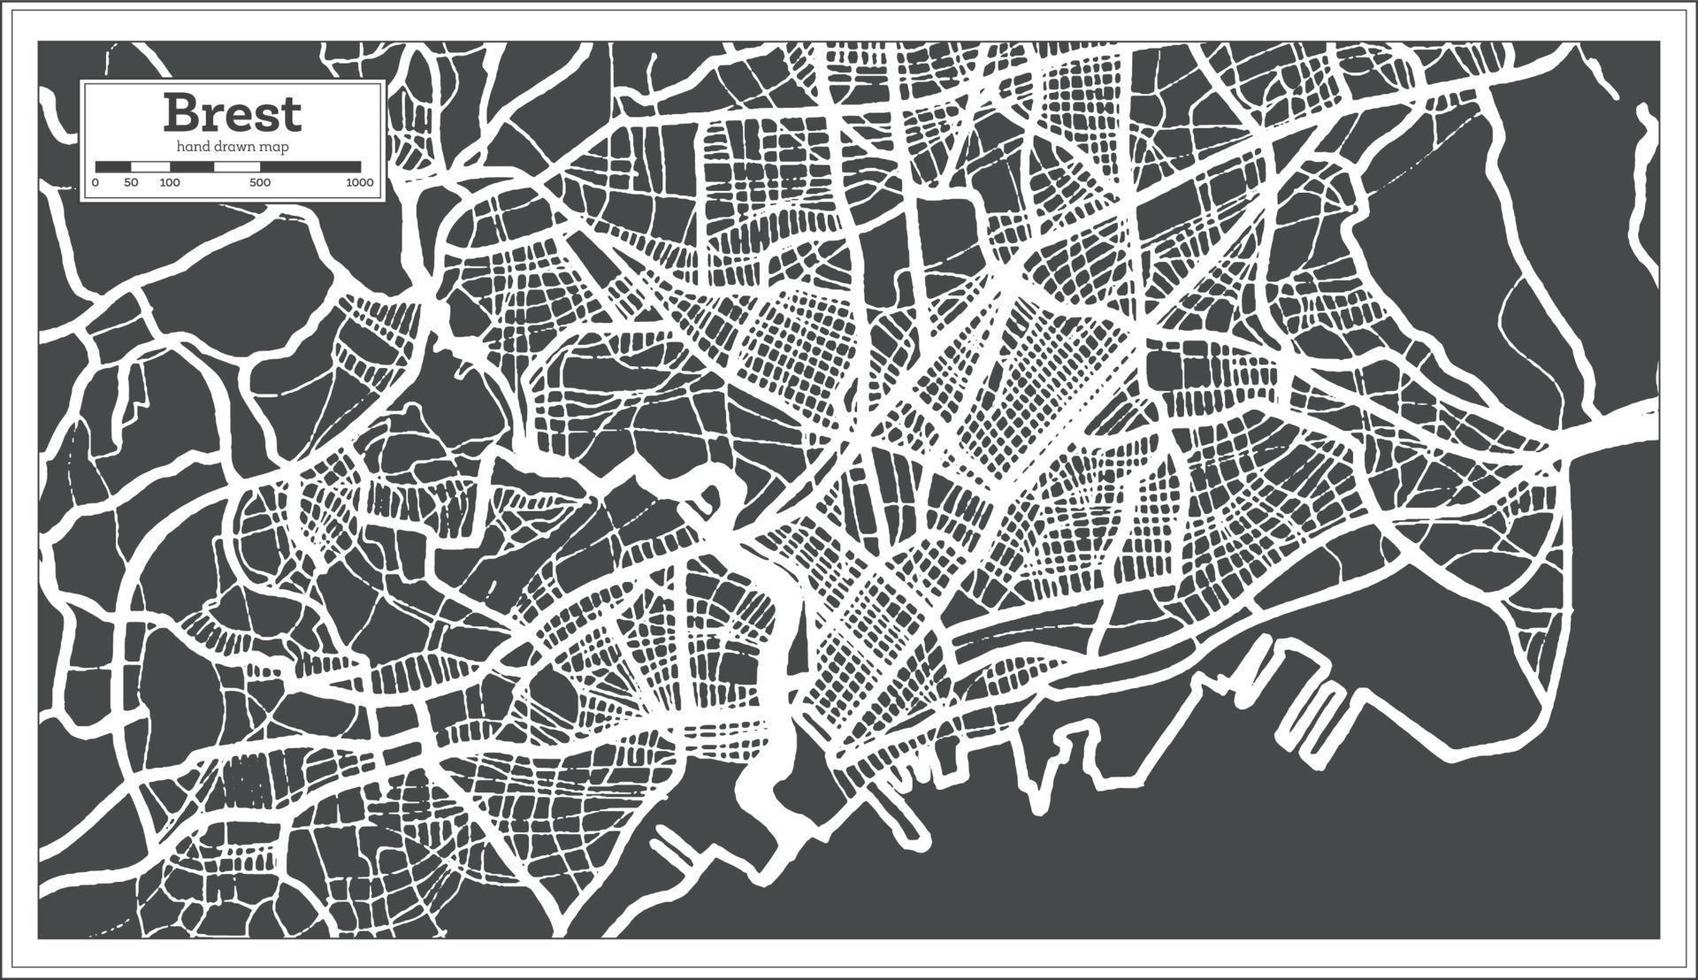 brest Frankrike stad Karta i retro stil. översikt Karta. vektor illustration.